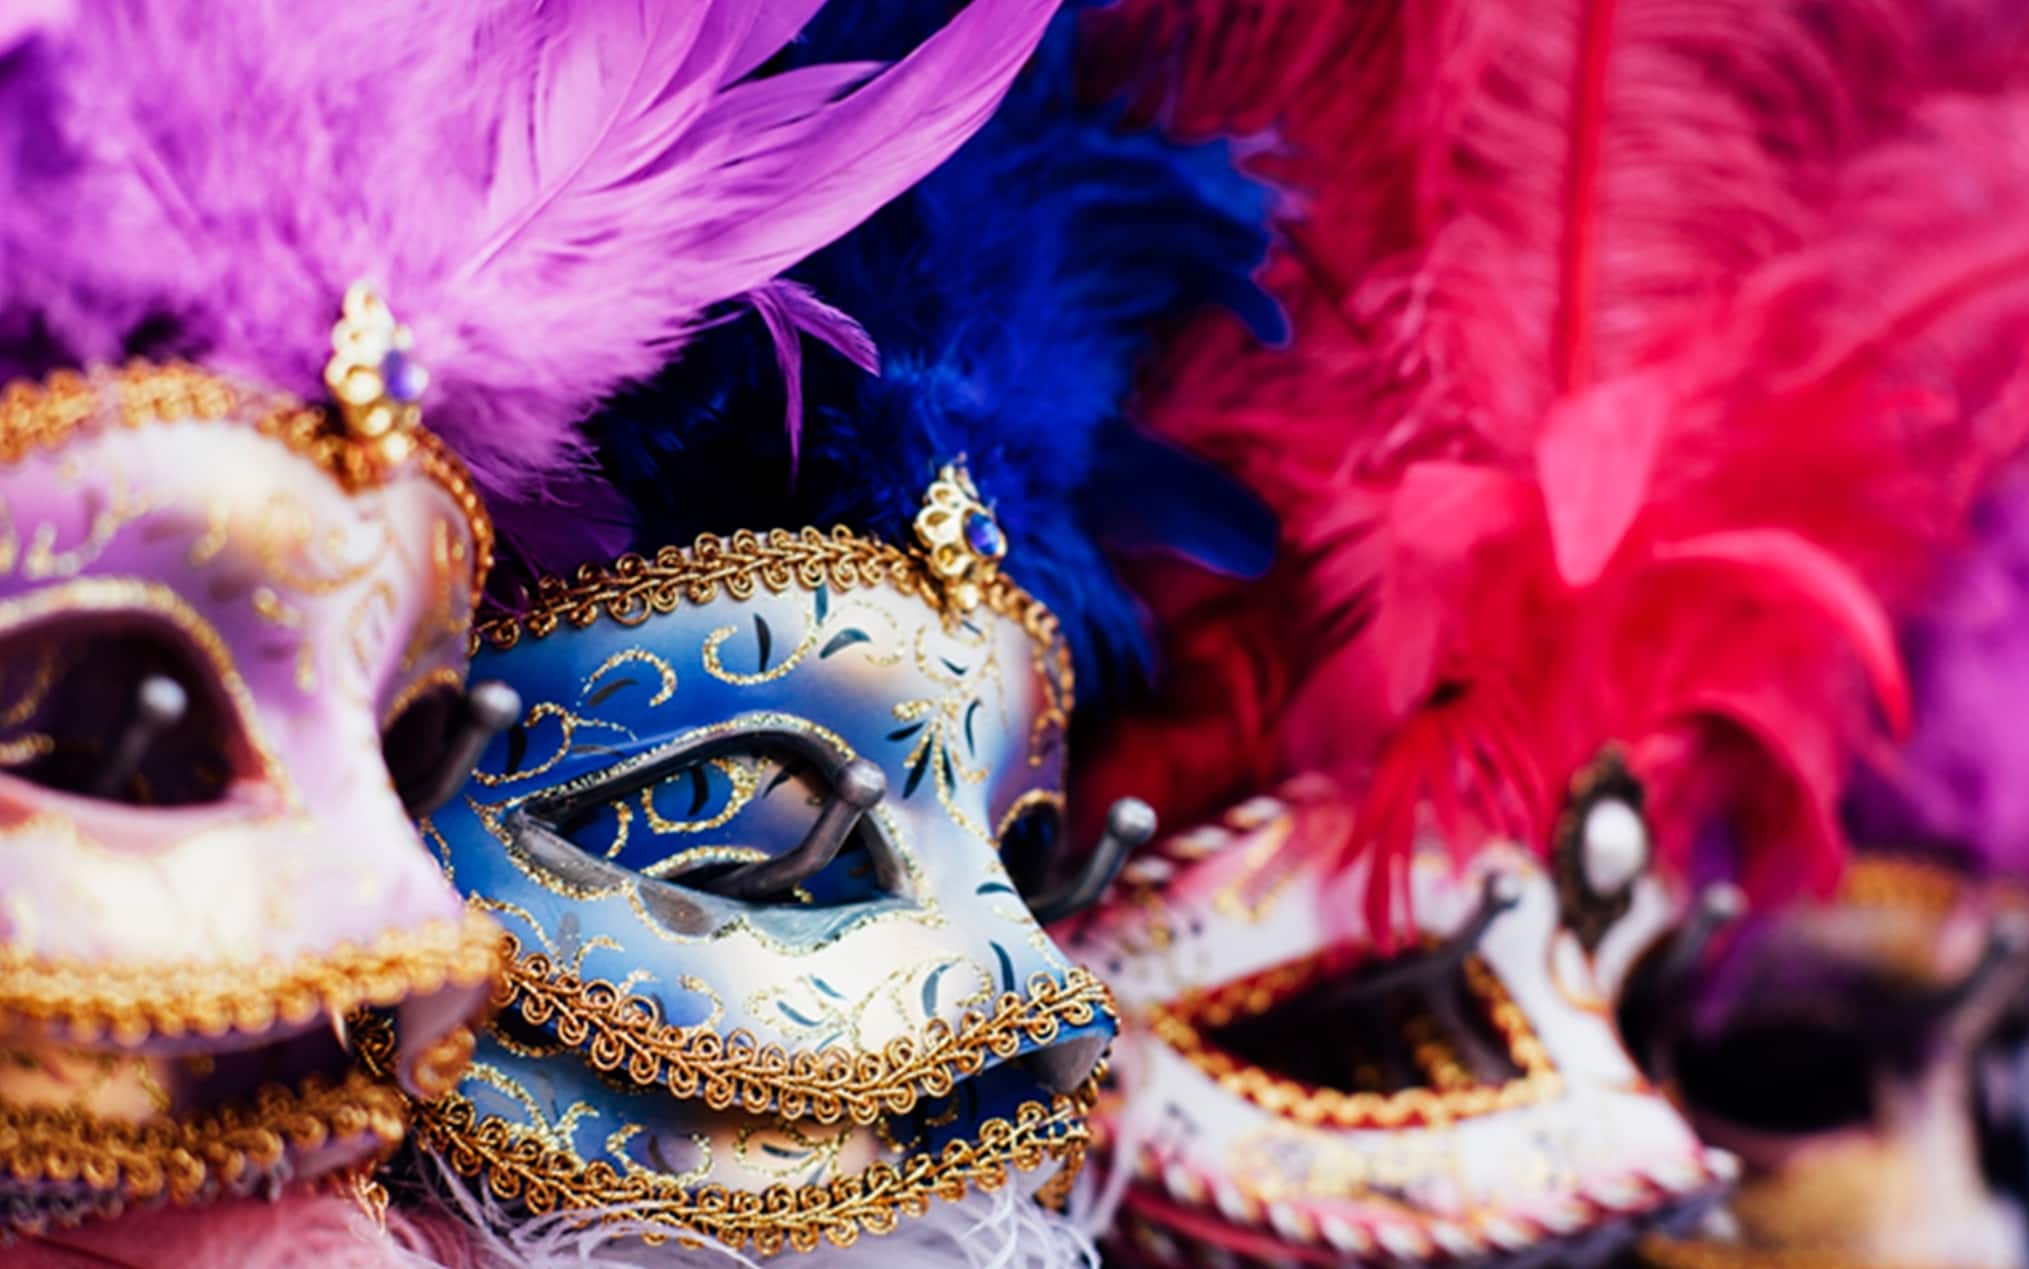 Maschera di Carnevale, le migliori e più tecnologiche